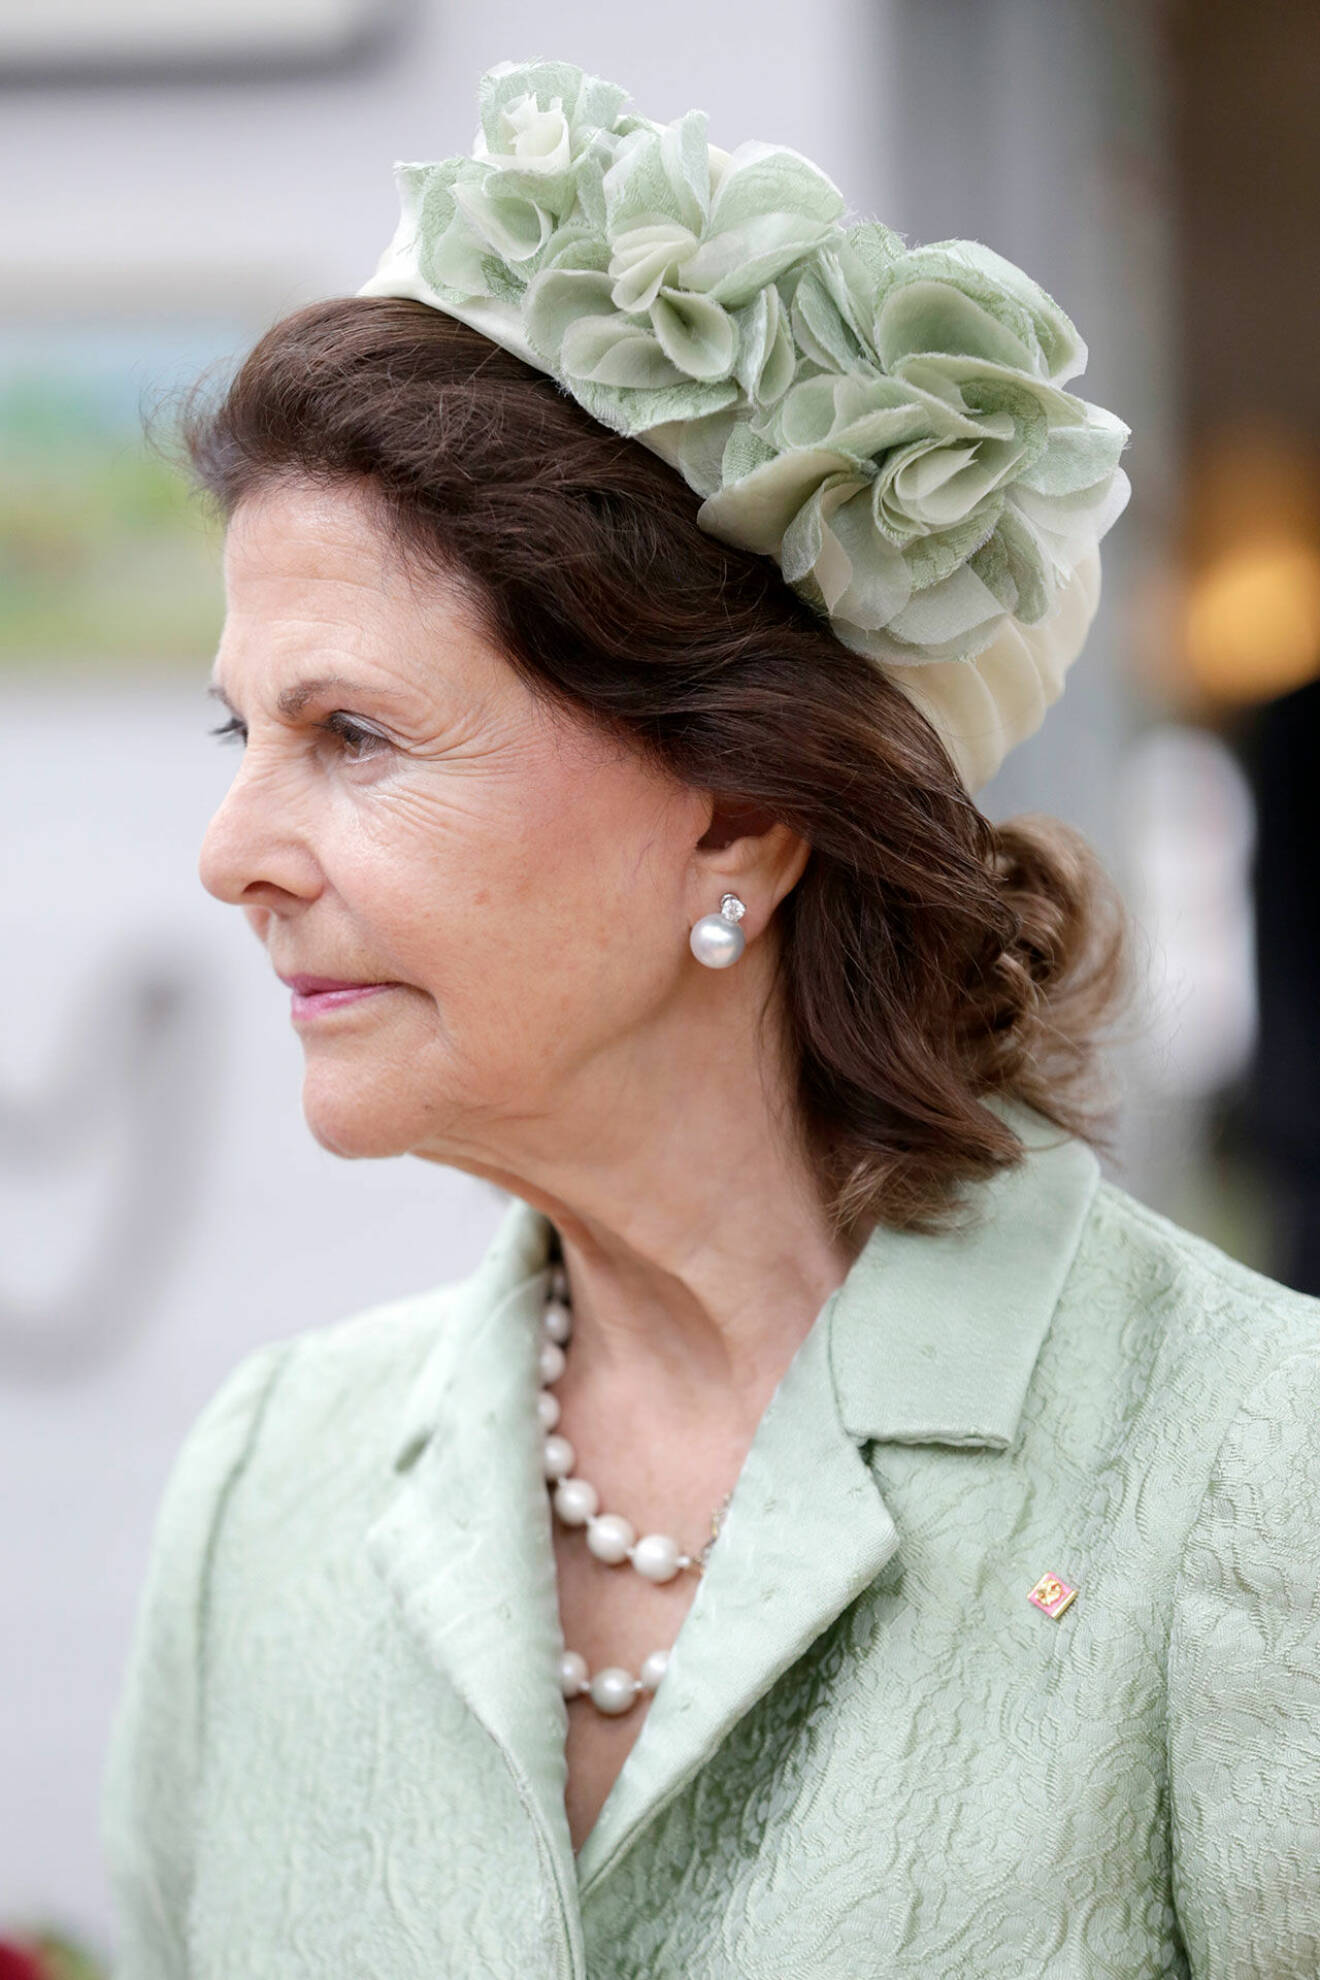 Statsbesök Sydkorea. Drottning Silvia i grön hatt.